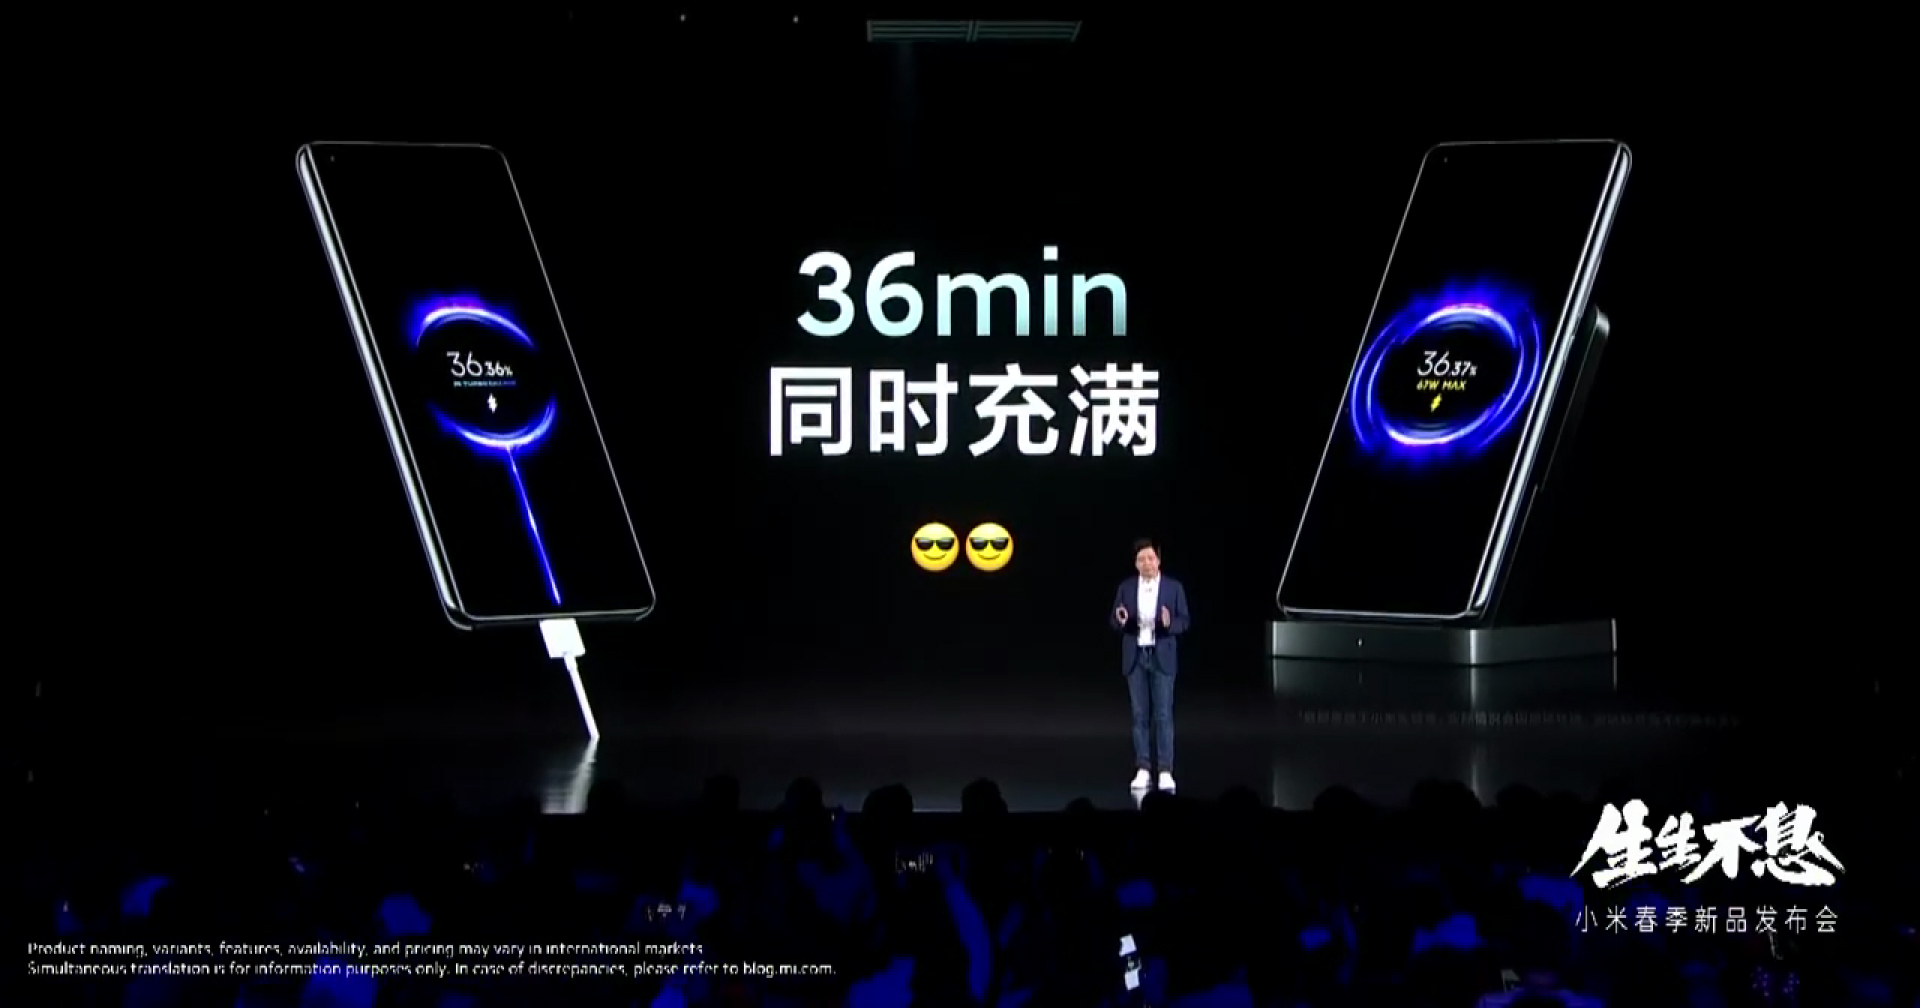 ไวอย่างกับแสง!! Xiaomi เปิดตัวชาร์จ 67W ความเร็วสูง เพียง 36 นาทีจาก 0 ถึง 100 ได้ทั้งสายและไร้สาย